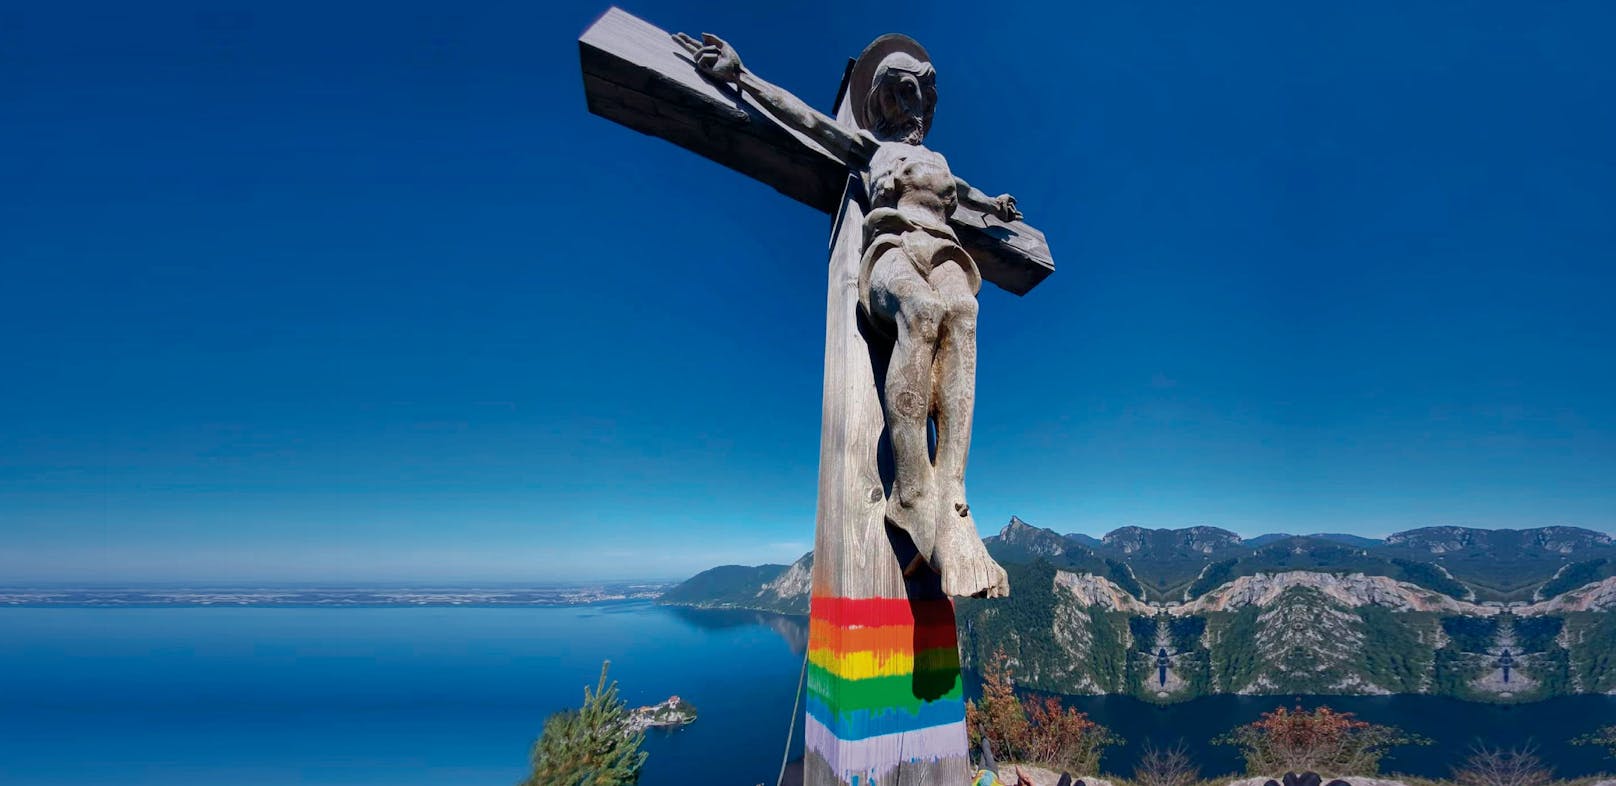 Regenbogen-Flagge auf Gipfelkreuz gemalt, nun Shitstorm